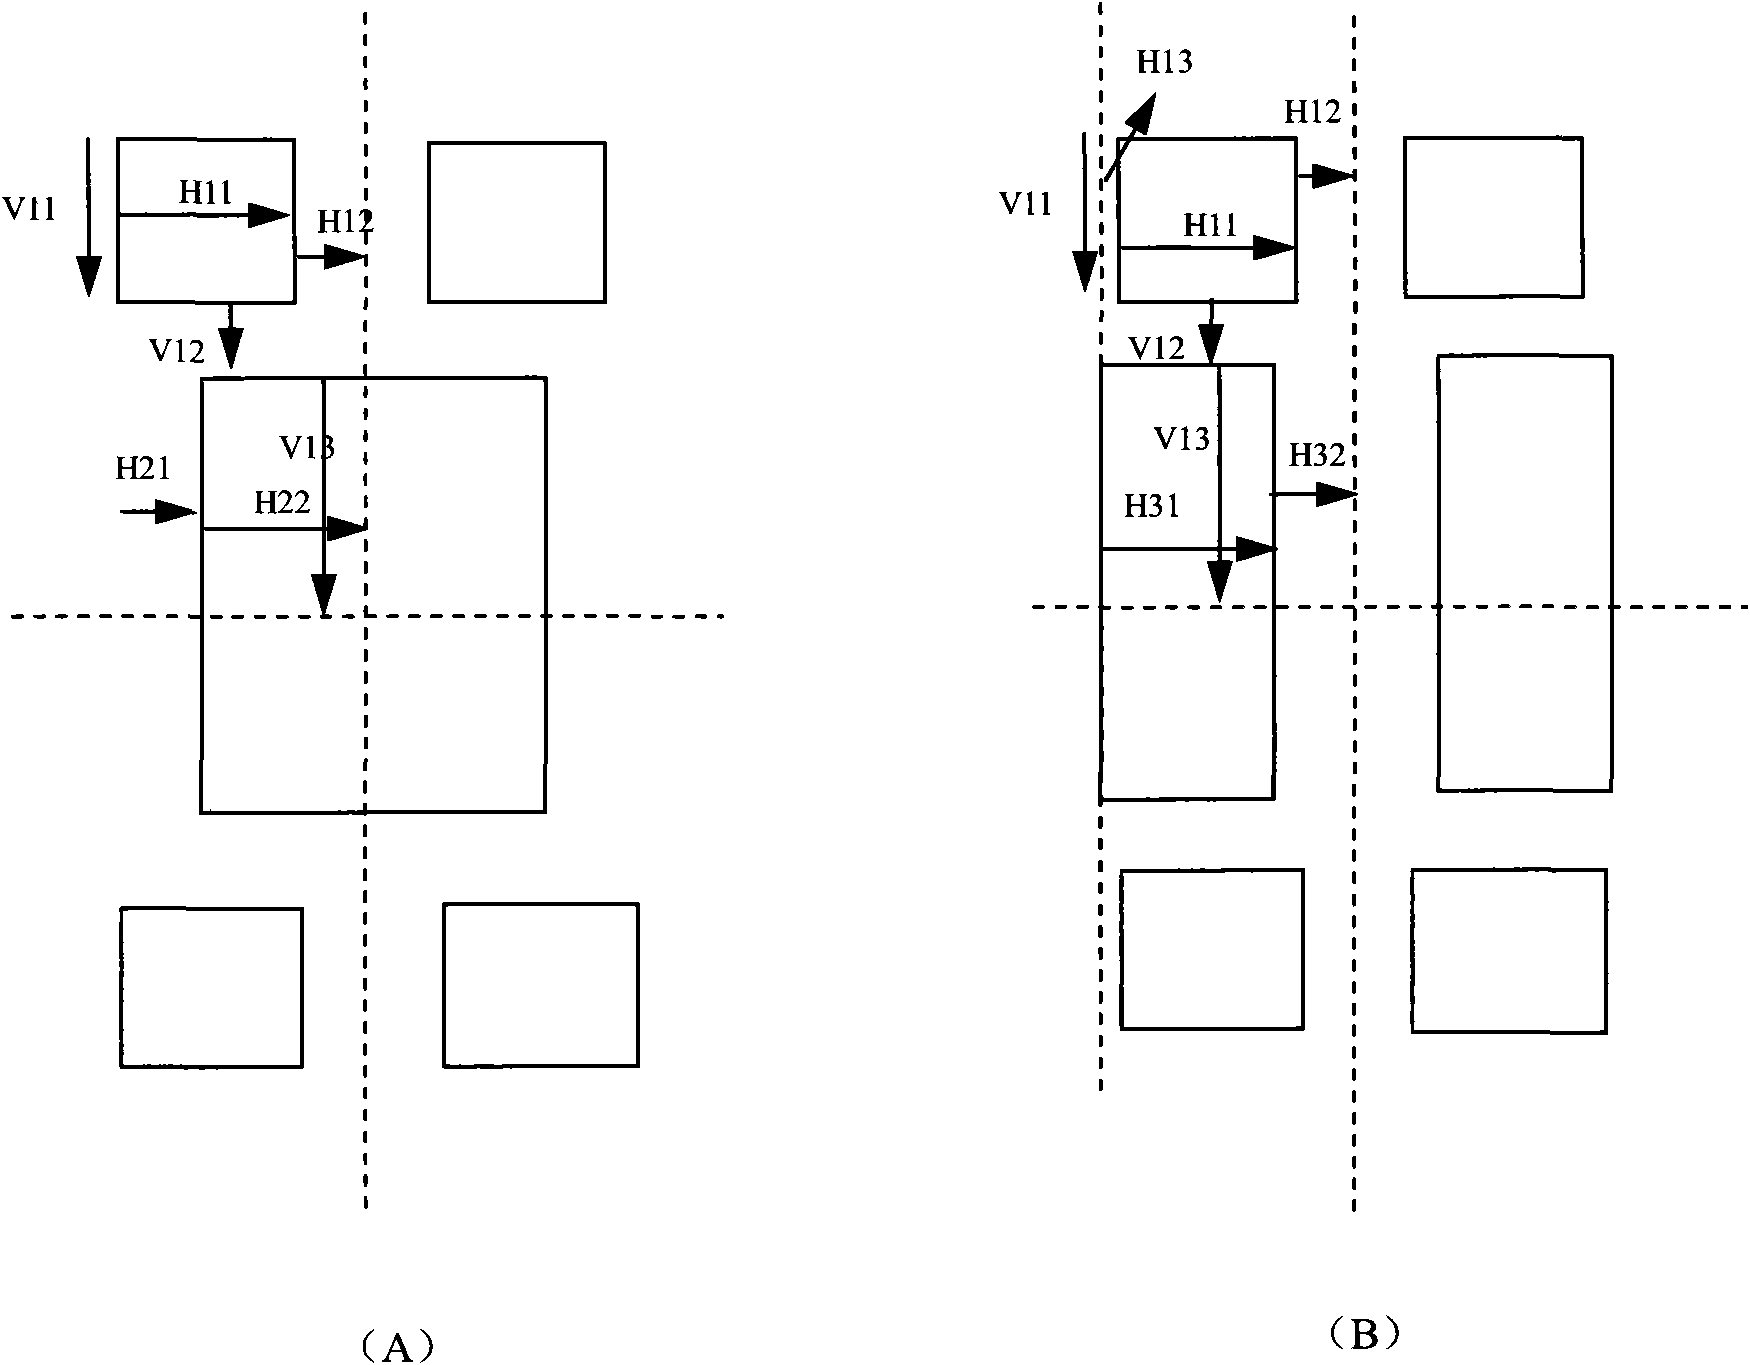 Optical proximity correction figure for enhancing figure fidelity of Si/Ge emitter window